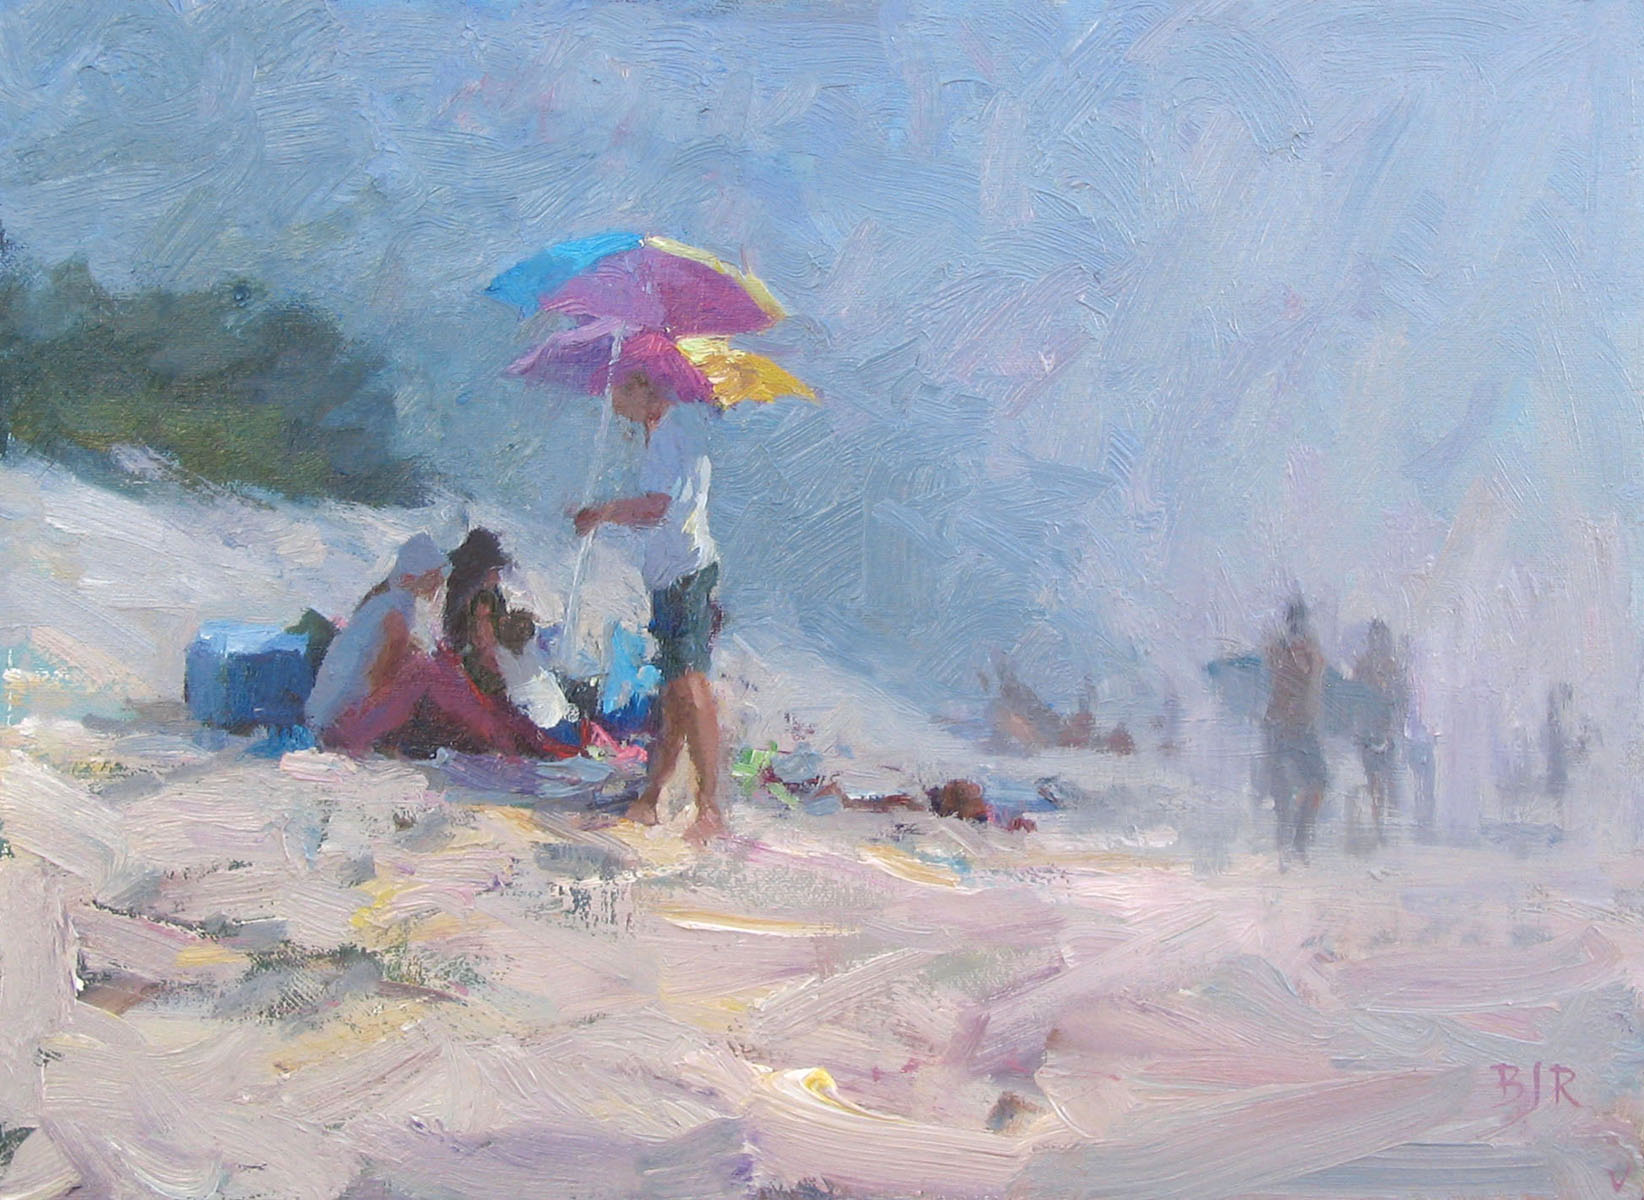 A Day at Carmel Beach by Barry John Raybould